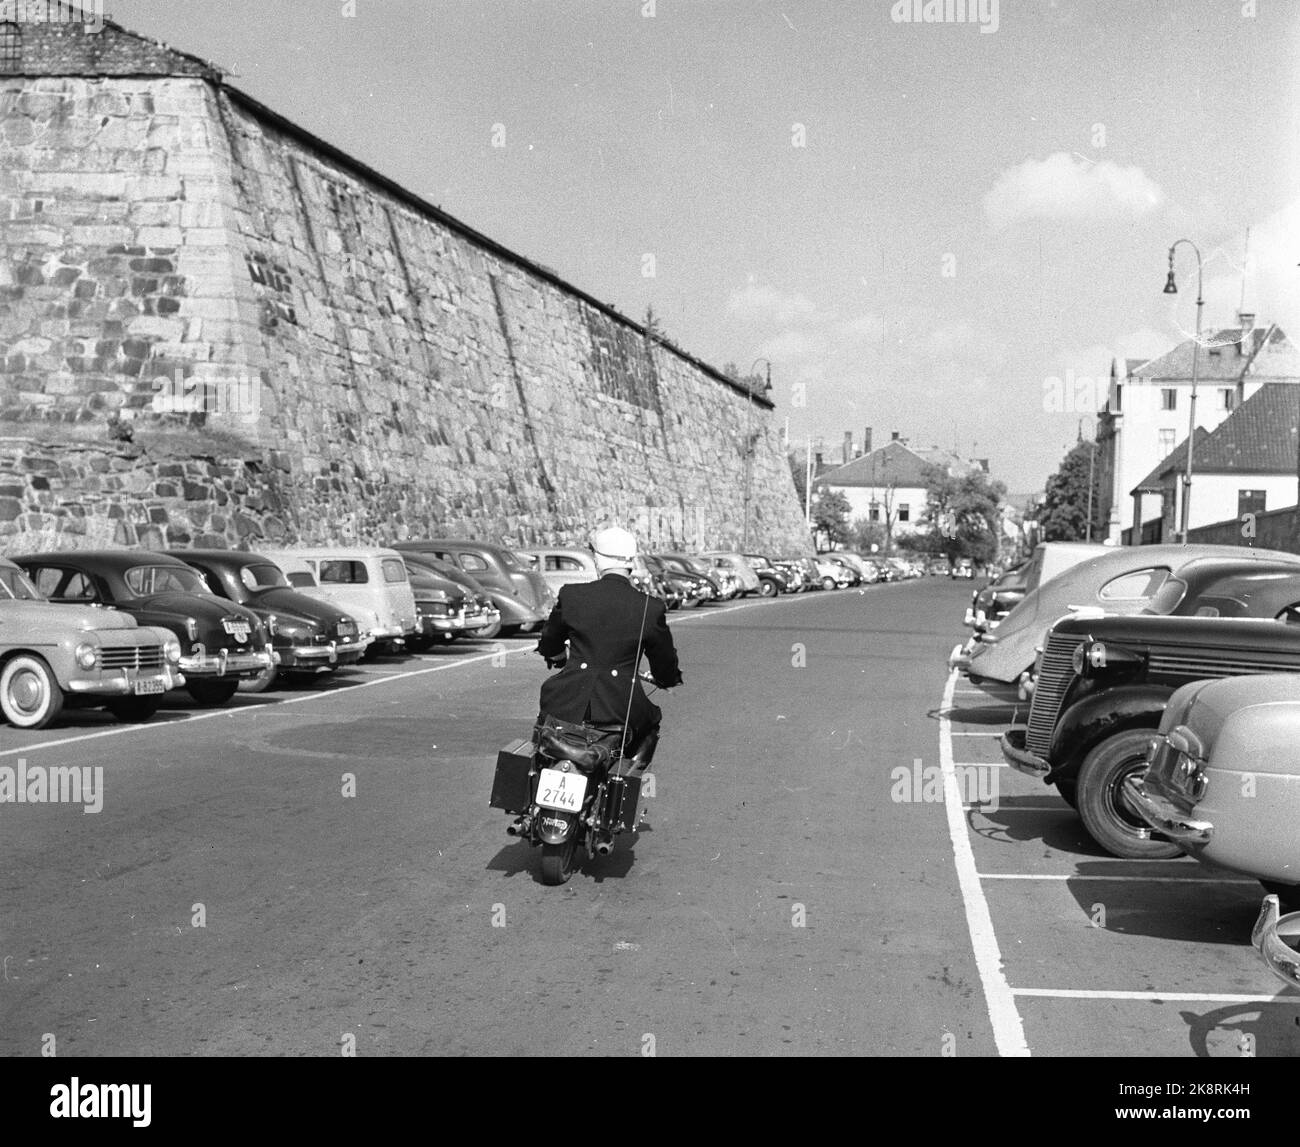 Polizei Oslo 1955 auf zwei Rädern Eine Motorradpatrouille des Oslo Police Traffic Corps geht aus, um ihre Positionen im Verkehr zu finden. Das Vorderrad ist mit Funksender und Empfänger ausgestattet, Experte mit der Ausrüstung. Die Motorradpolizei in Oslo verwendet Norton 500-Motorräder, von denen 14 zur Verfügung stehen. Die Höchstgeschwindigkeit beträgt 135-140 km/h, und die wenigen rohen Fahrer schaffen es, diese Jungs zu verlassen, wenn sie auf der Straße bleiben wollen. Hier bei der Festung Akershus. Foto; Sverre A. Børretzen / Aktuell / NTB NB! Foto nicht Bild behandelt !!! Stockfoto